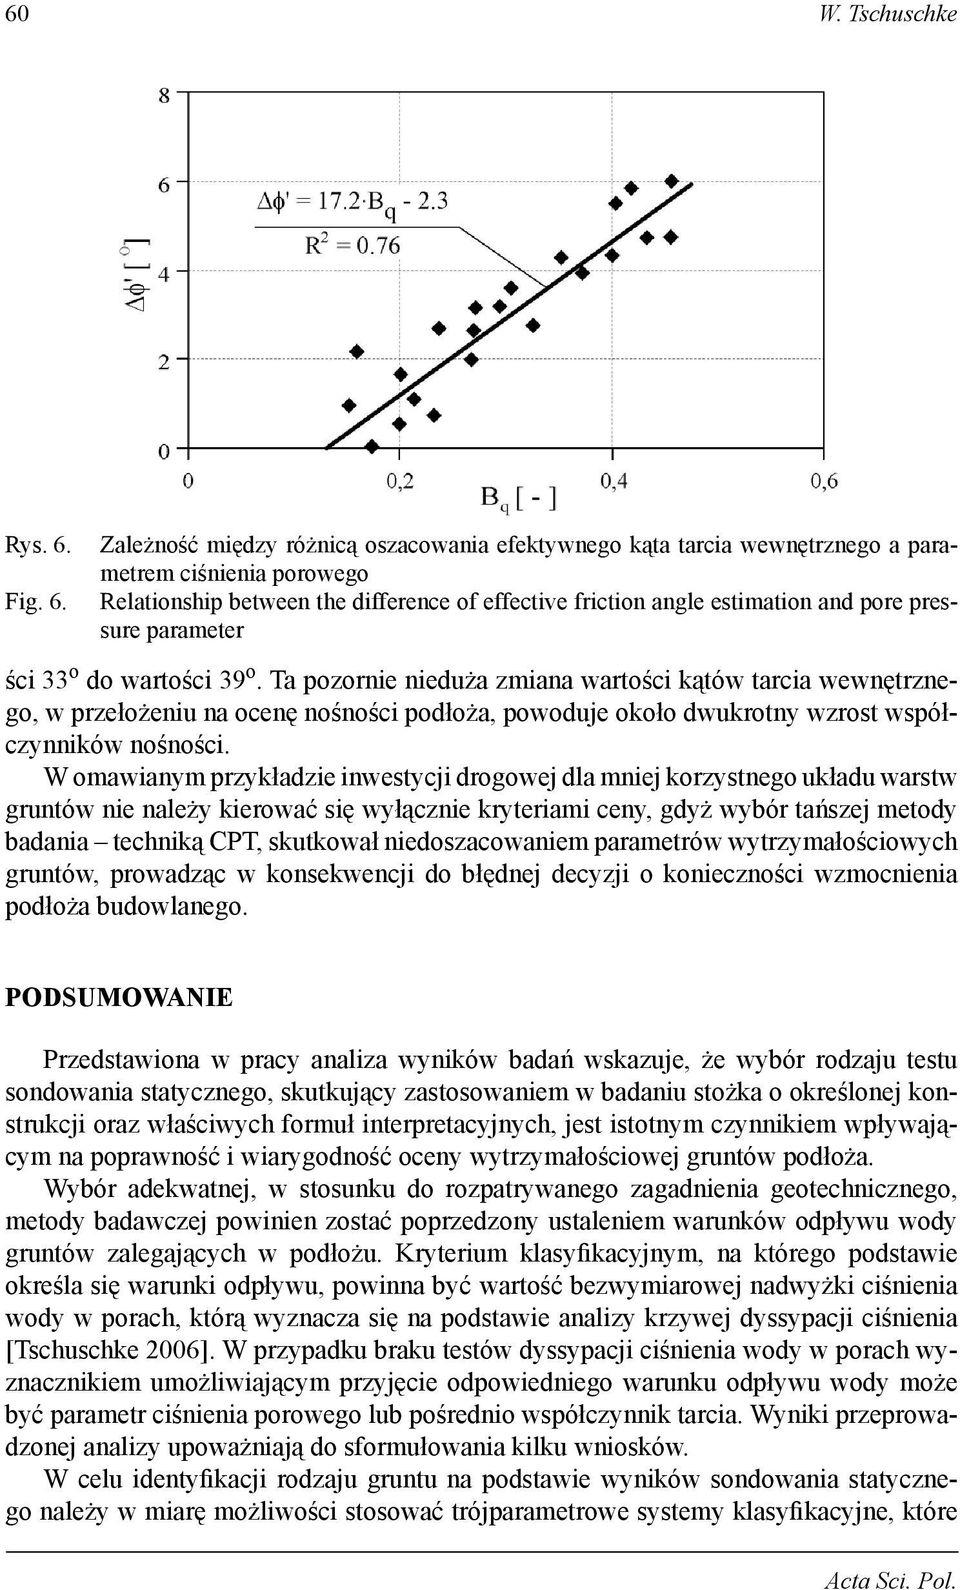 Zależność między różnicą oszacowania efektywnego kąta tarcia wewnętrznego a parametrem ciśnienia porowego Relationship between the difference of effective friction angle estimation and pore pressure